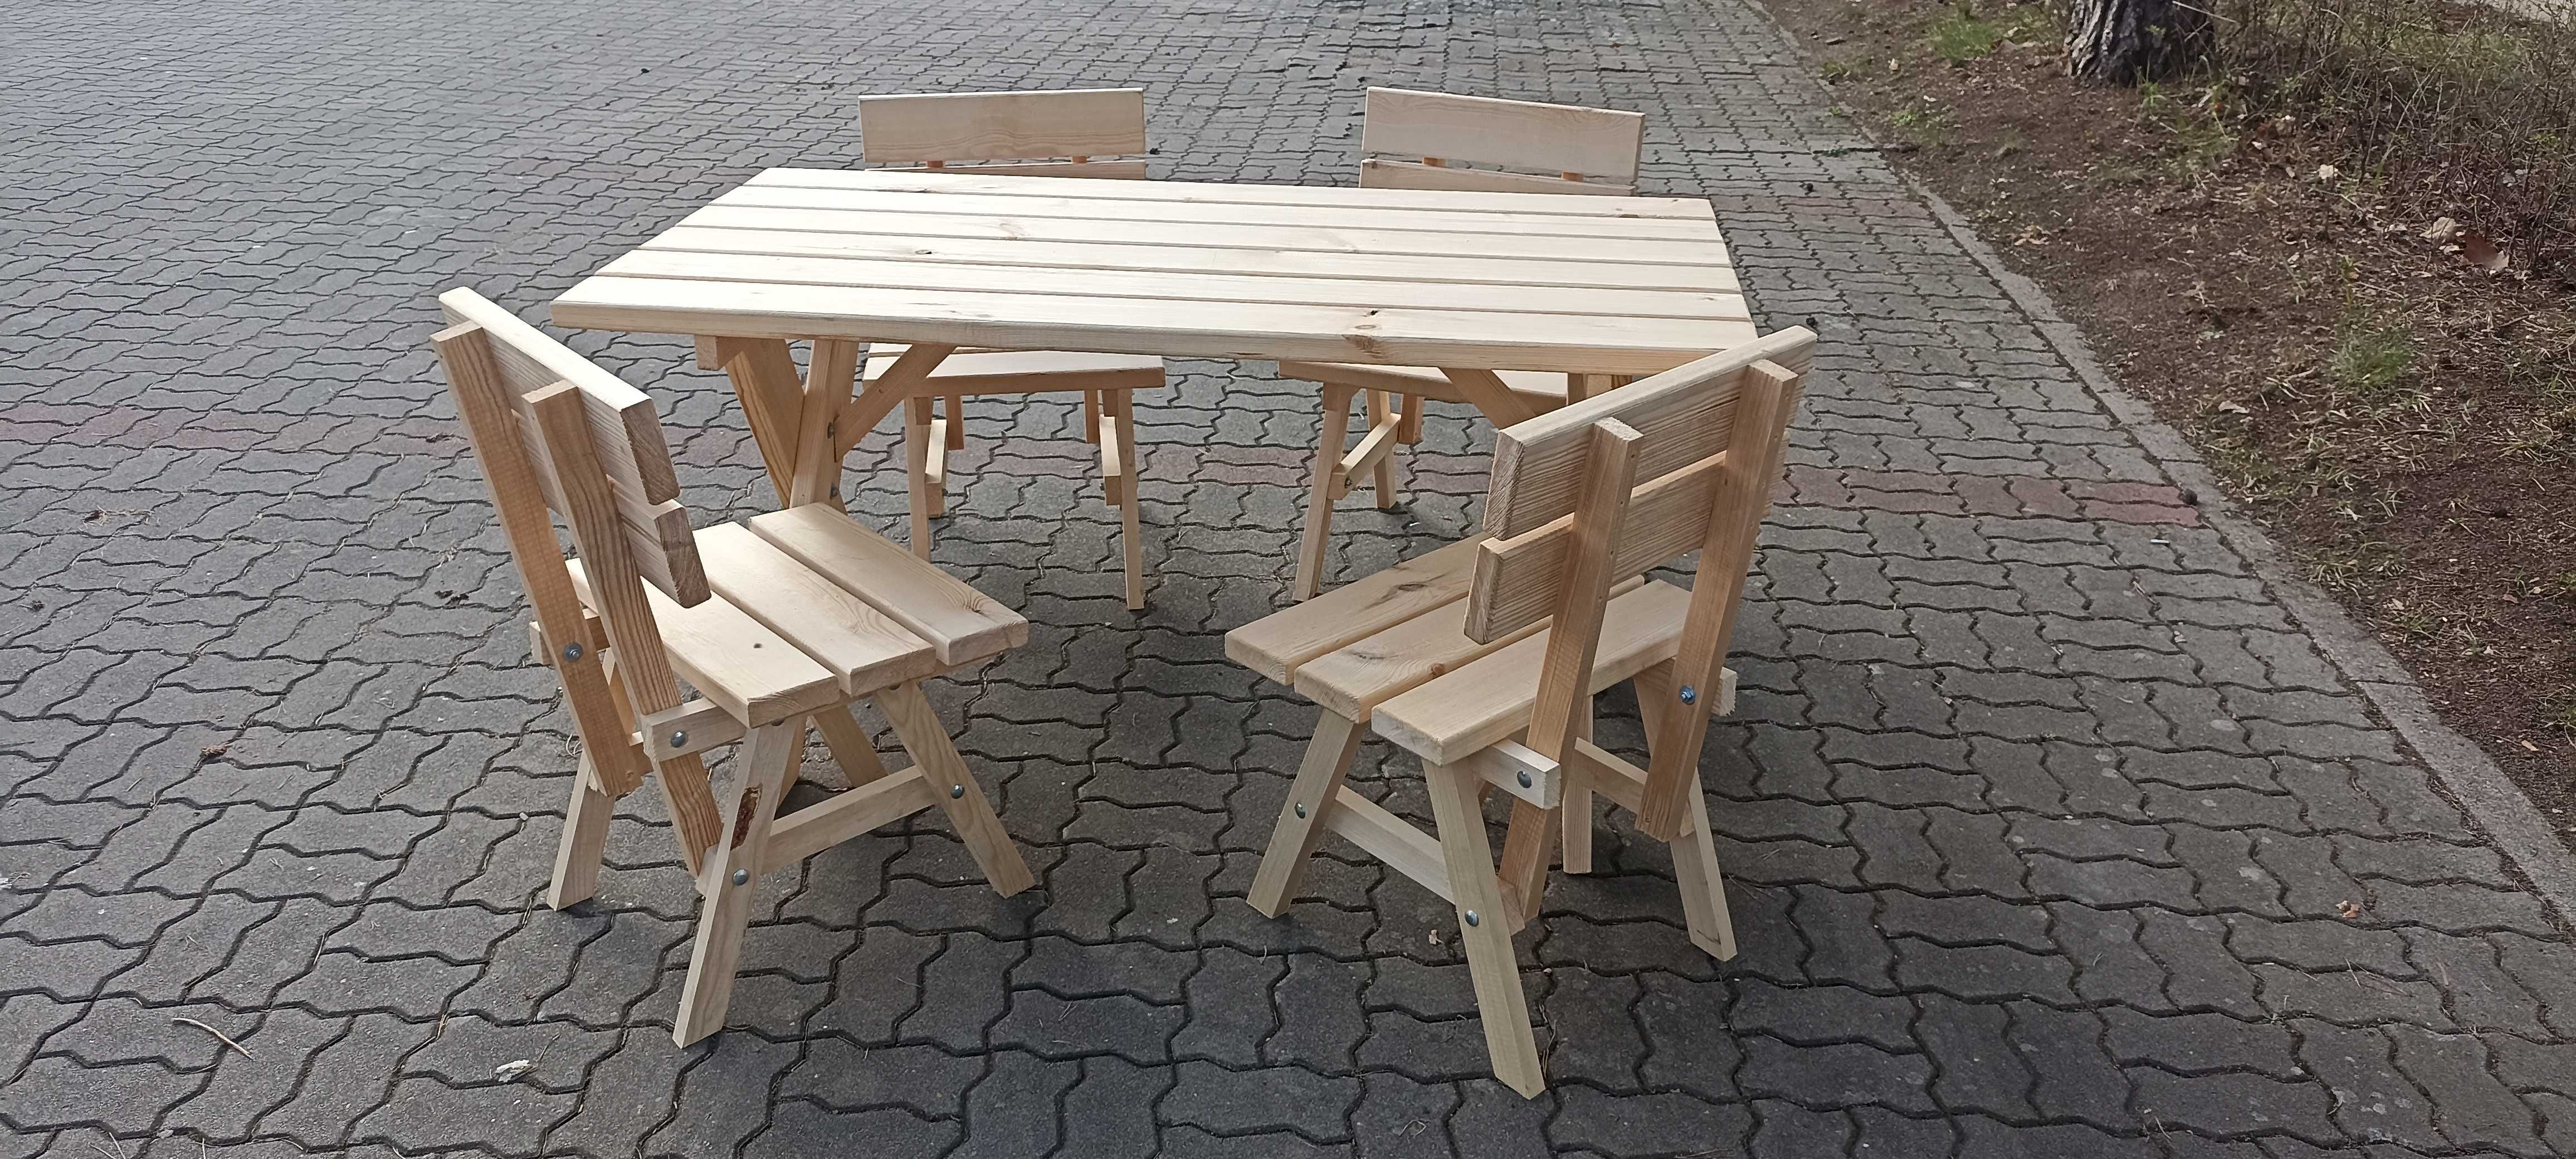 Stół ogrodowy z ławkami tarasowy barowy biesiadny drewniany nowy